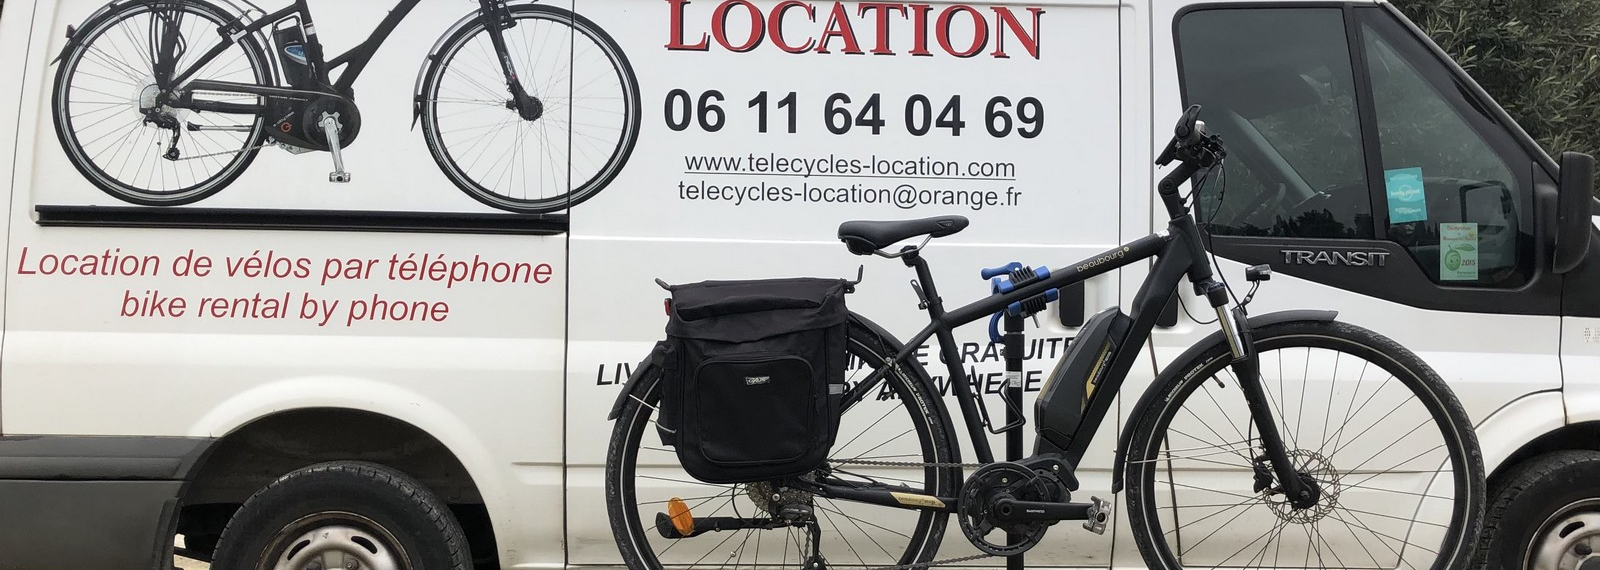 Location de vélos Télécycle Location à Graveson